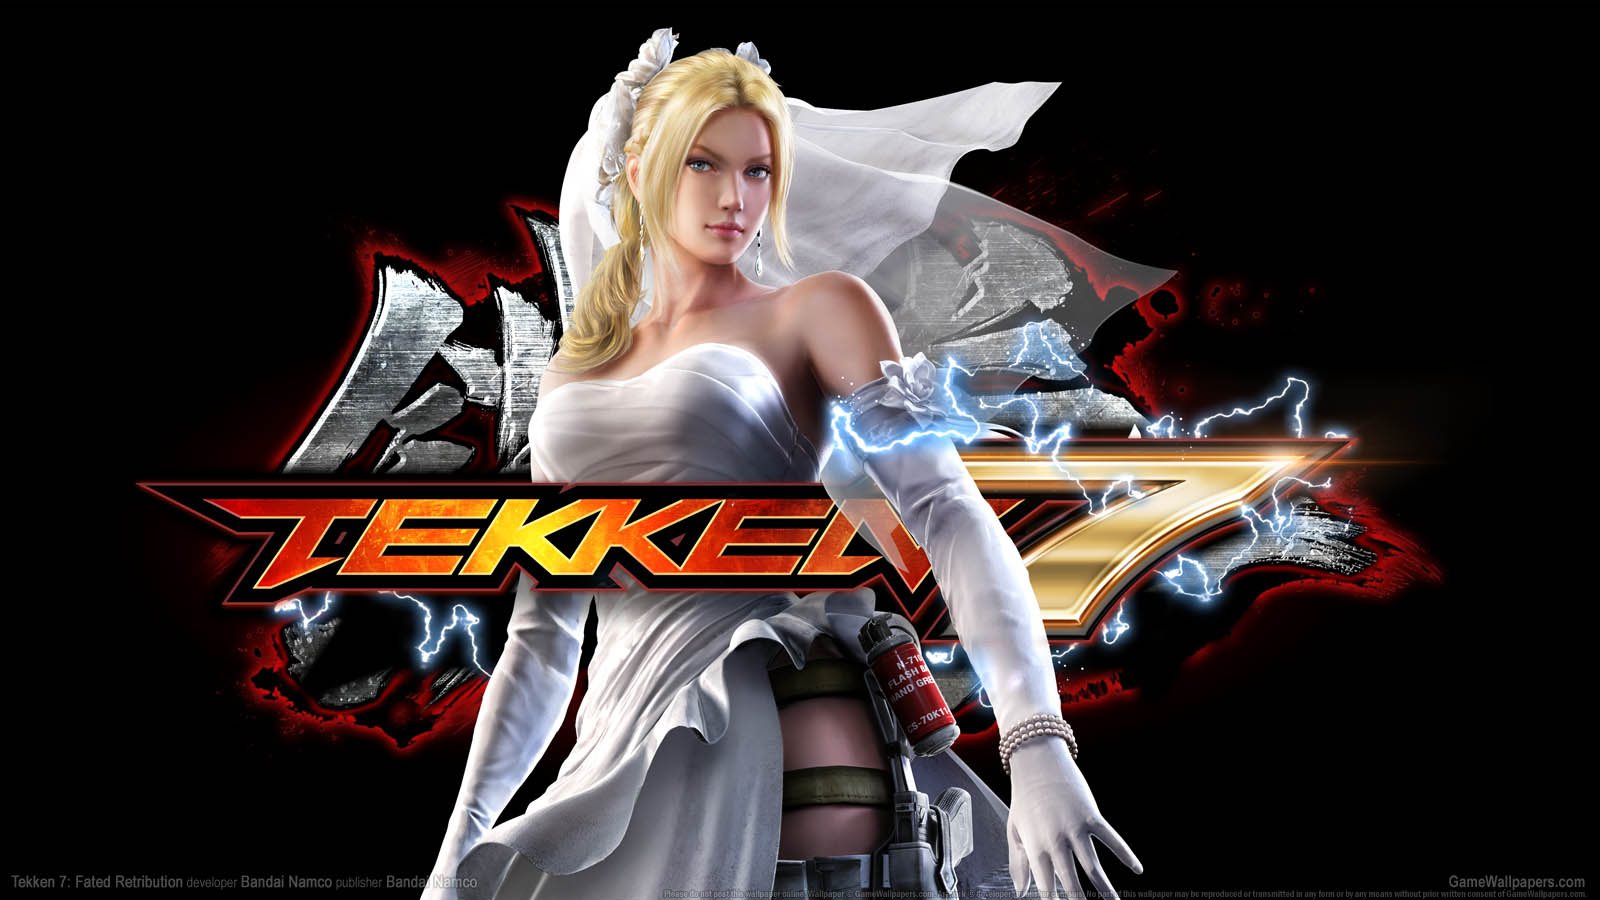 Tekken 7: Fated Retribution fond d'cran 01 1600x900